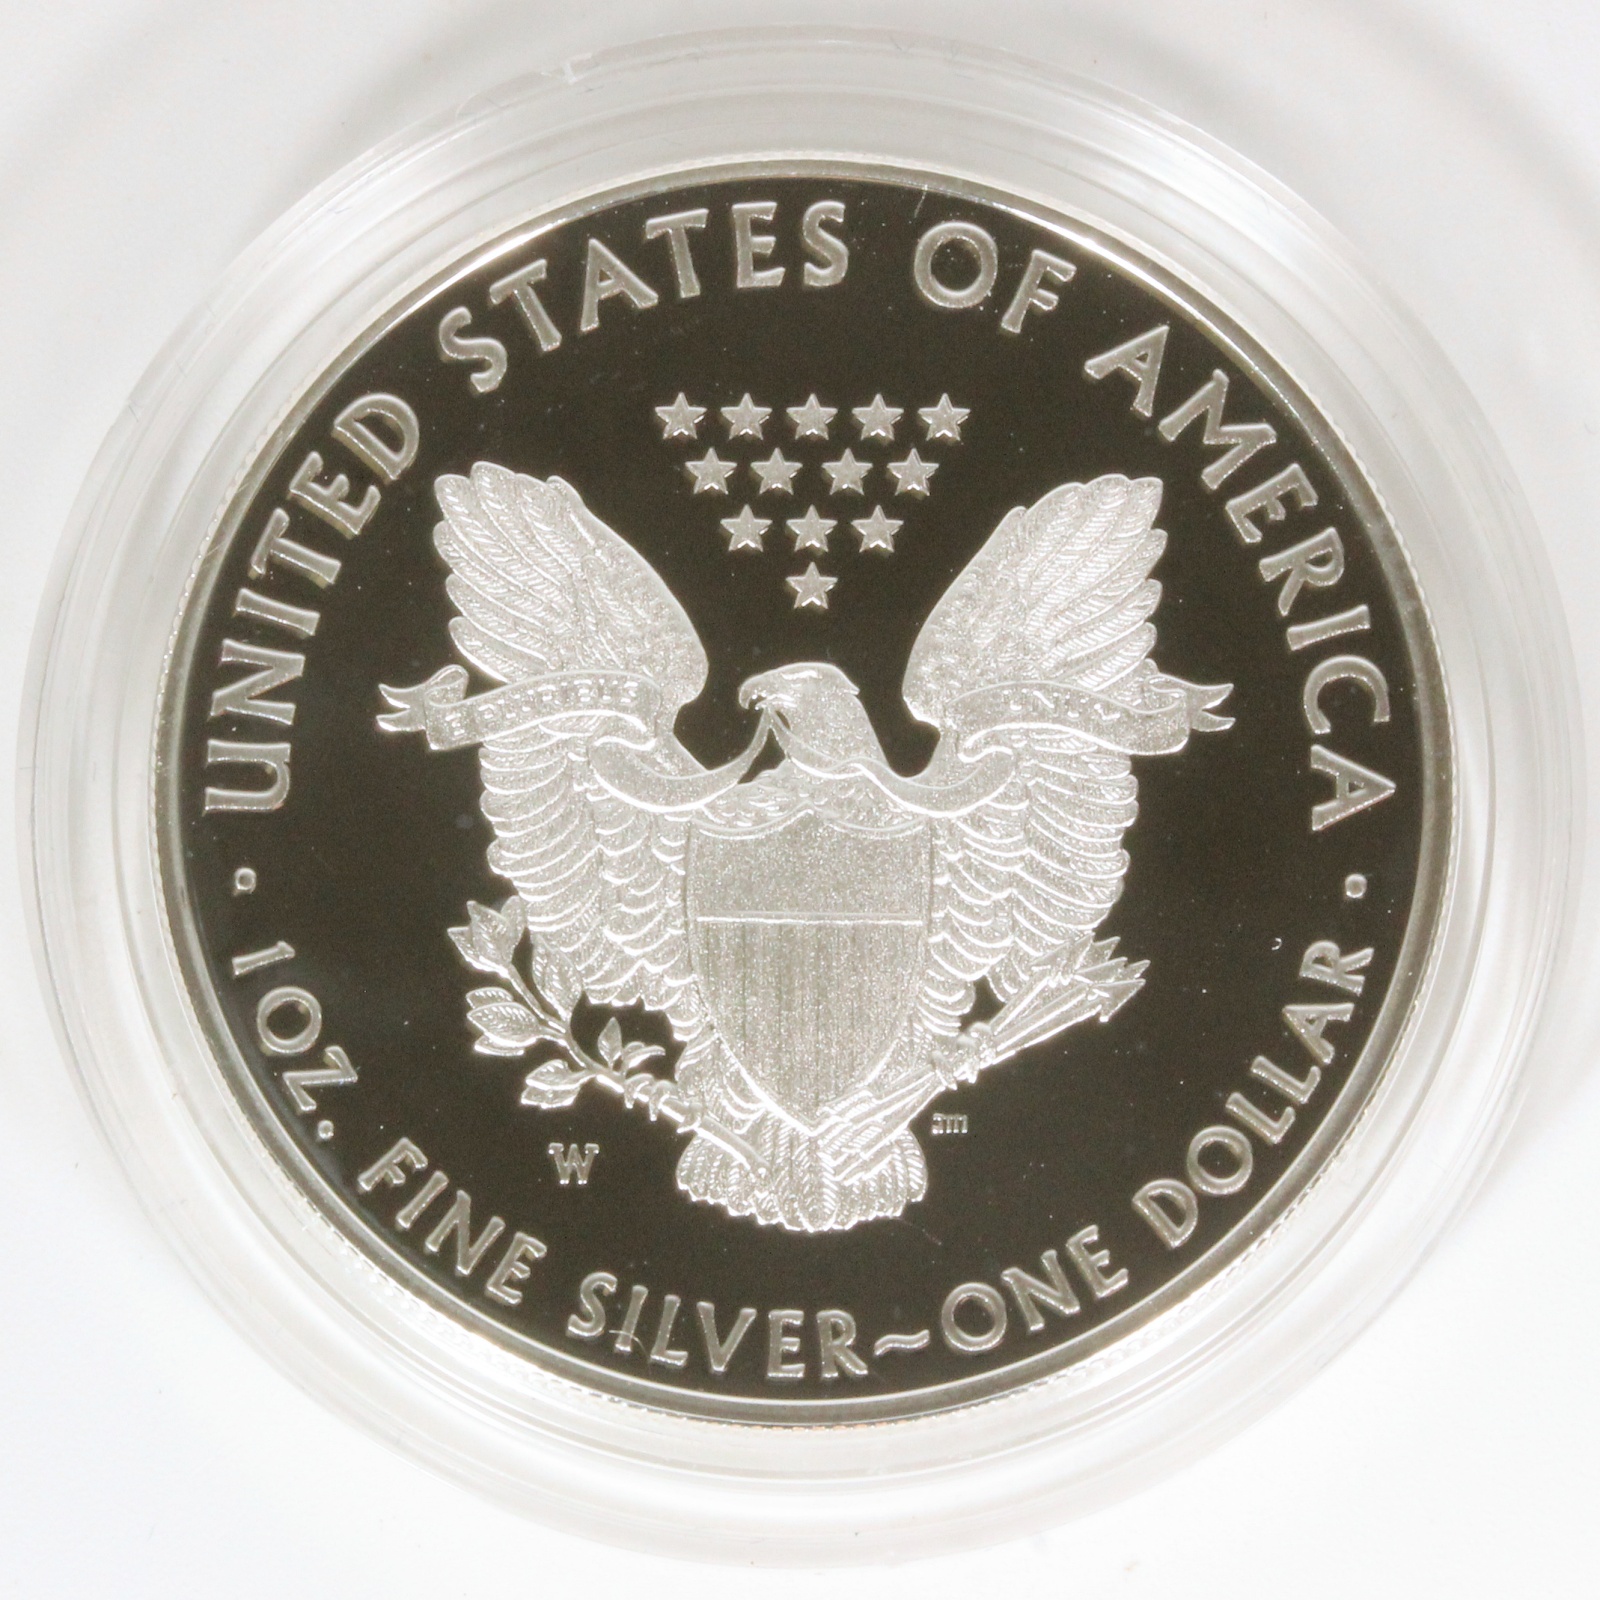 アメリカイーグル銀貨 2018年 1オンス 1oz アメリカ ミント プルーフ